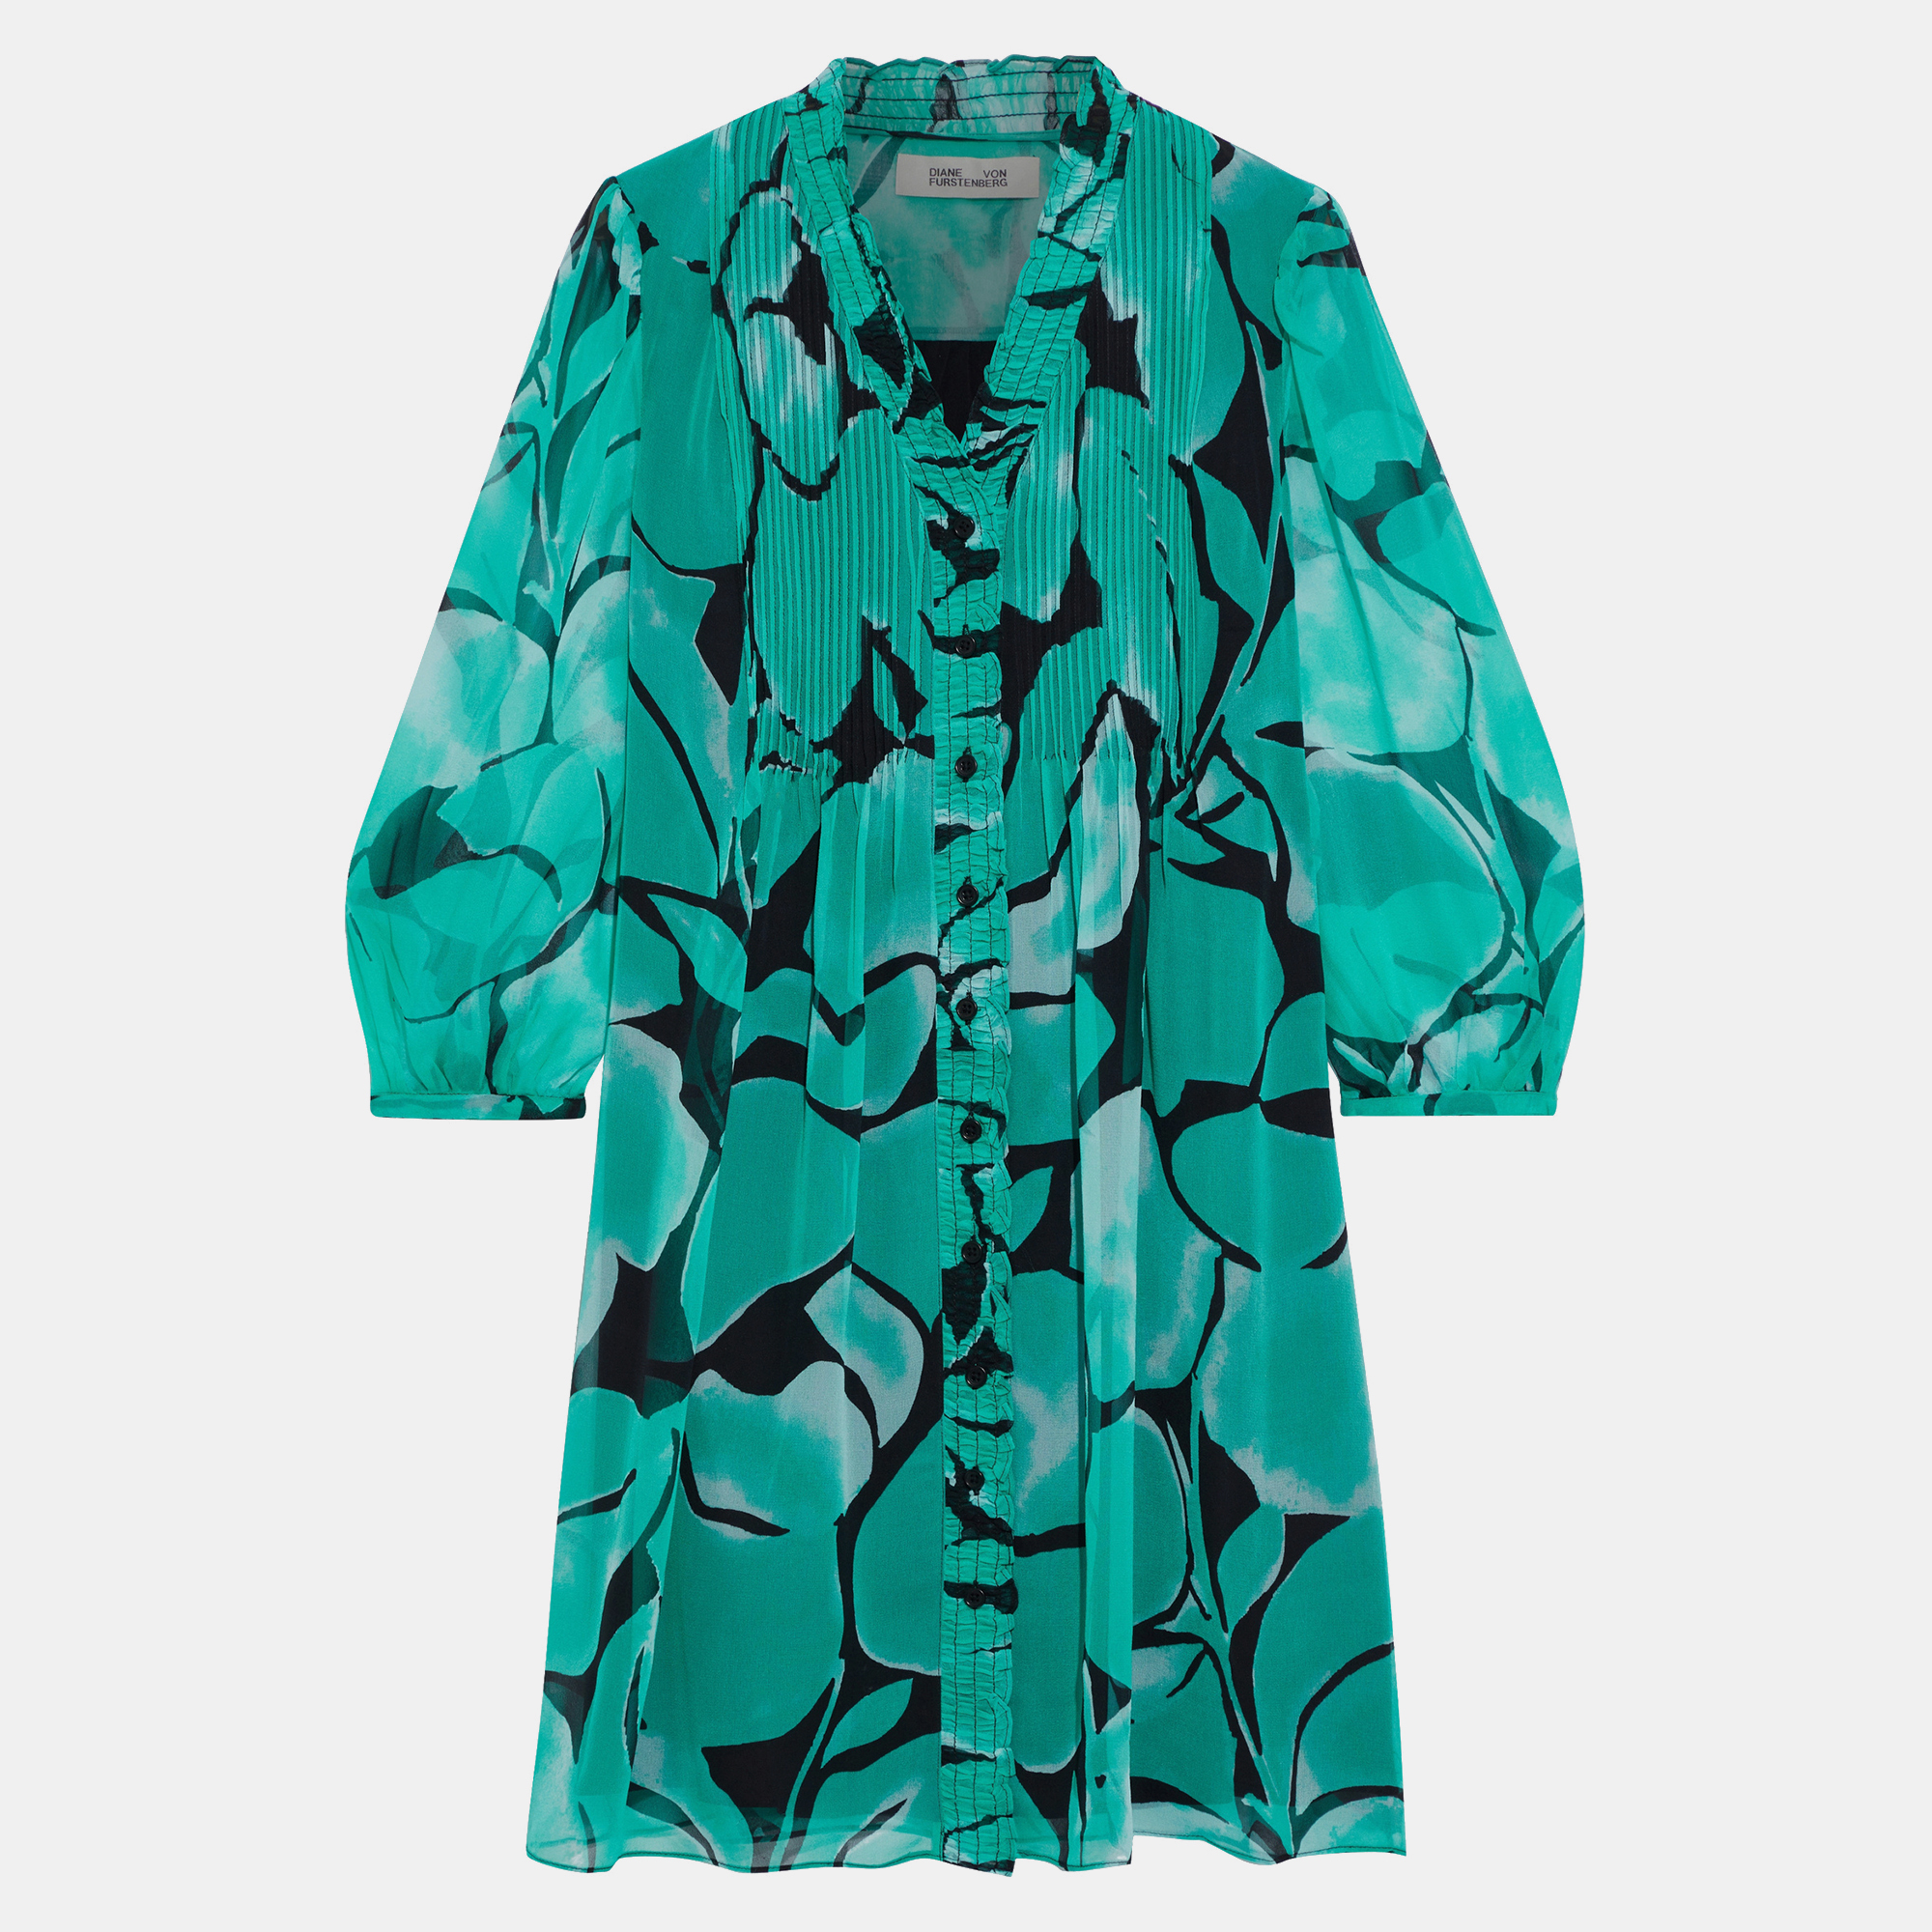 Diane von furstenberg green printed silk mini dress s